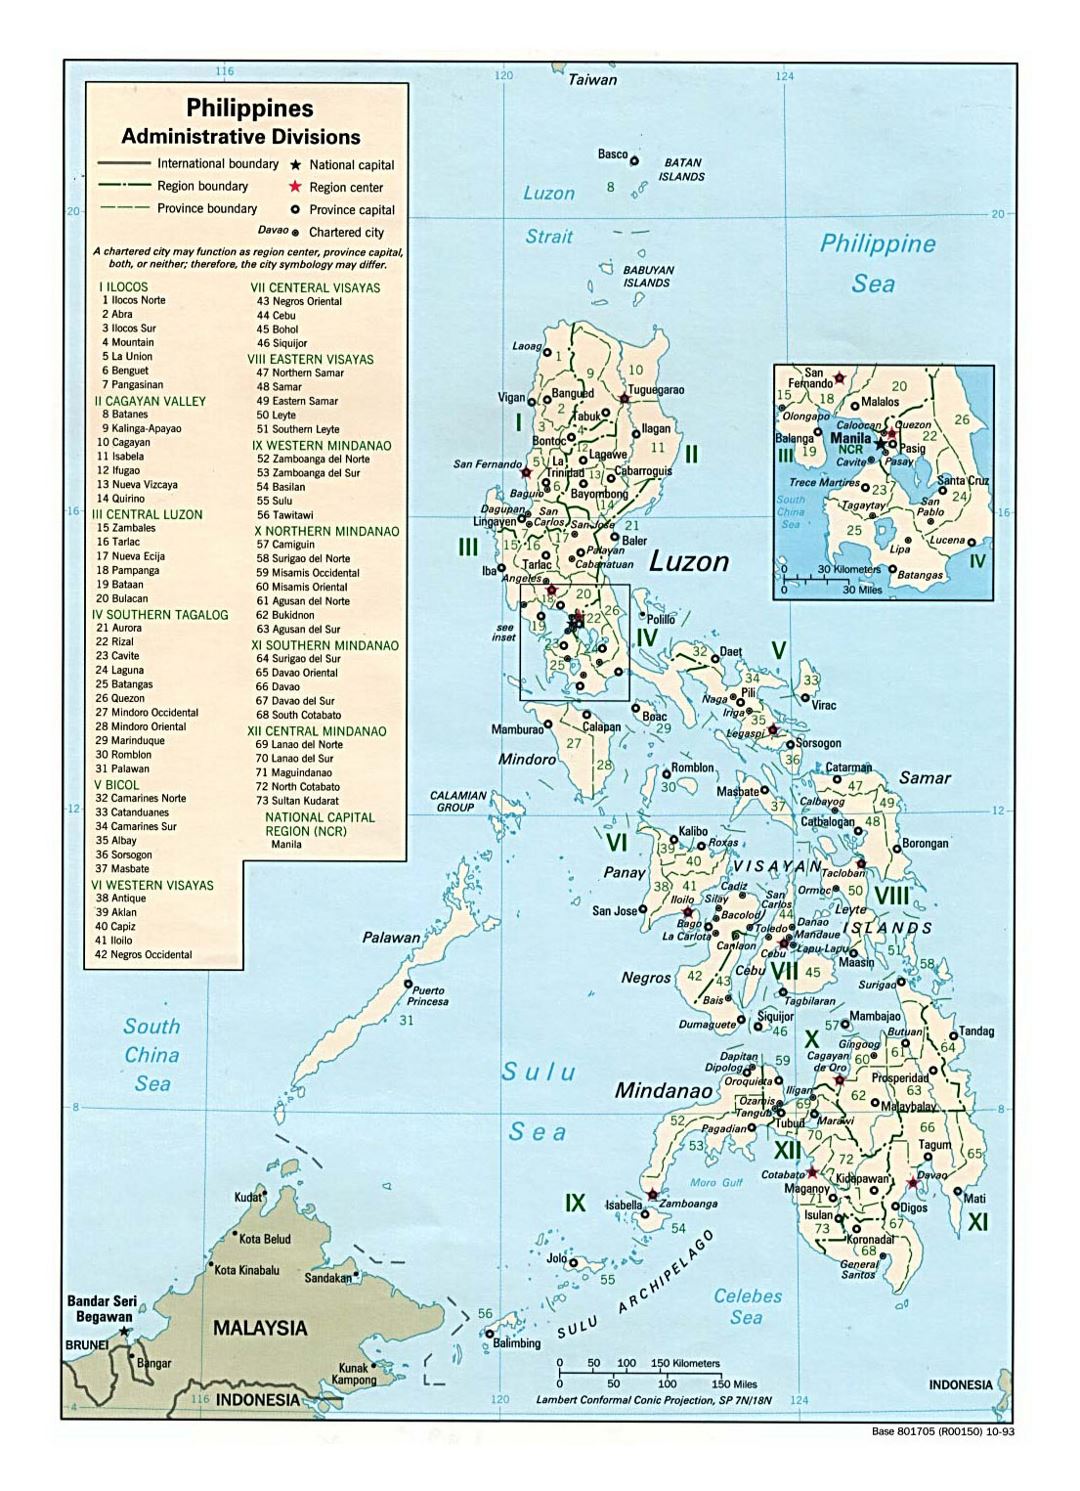 Detallado mapa de administrativas divisiones de Filipinas - 1993